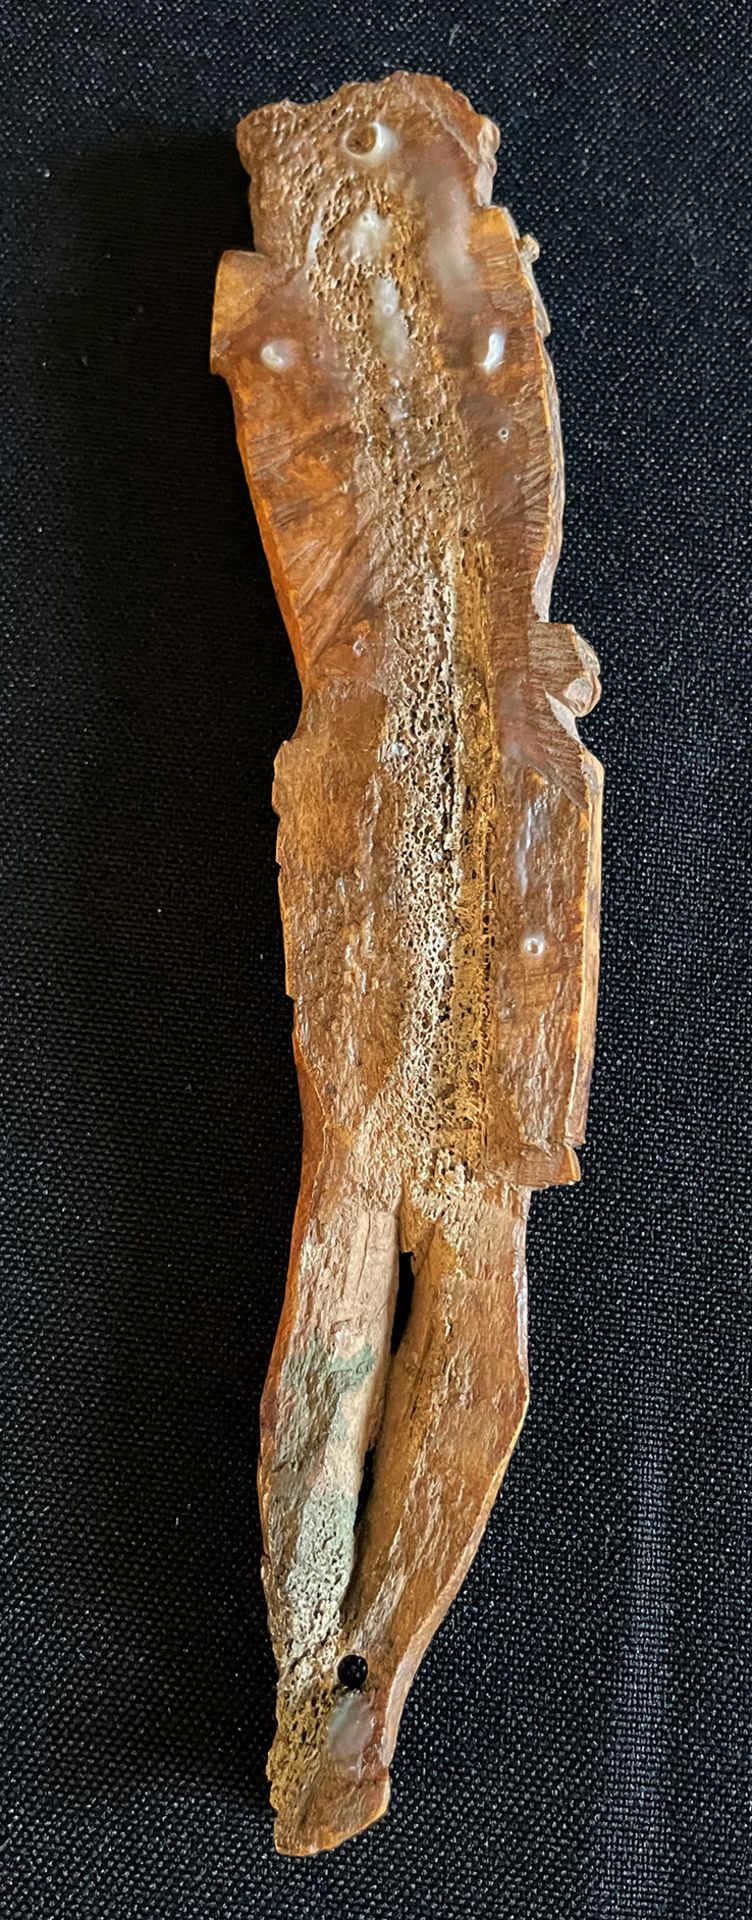 Corpus Christi, Alter unbekannt, Knochen, Altersspuren, Arme nicht vorh., L. 15,5 cm - Bild 2 aus 2